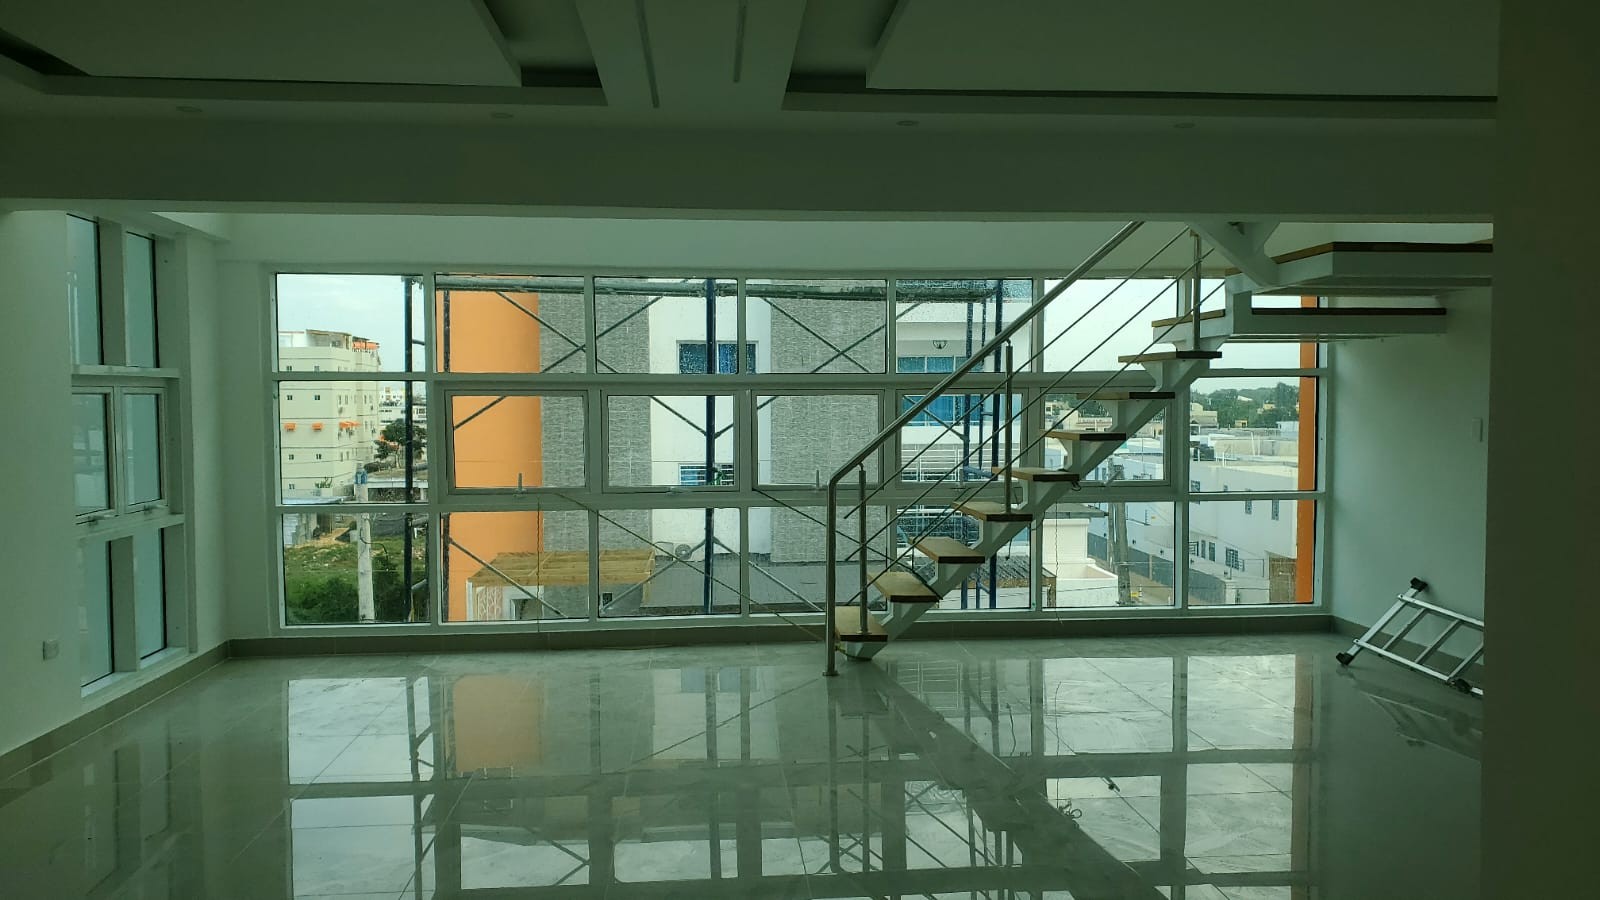 penthouses - Inigualable Penhouse en Autopista de San Isidro, lujo y confort, cuarto piso 6